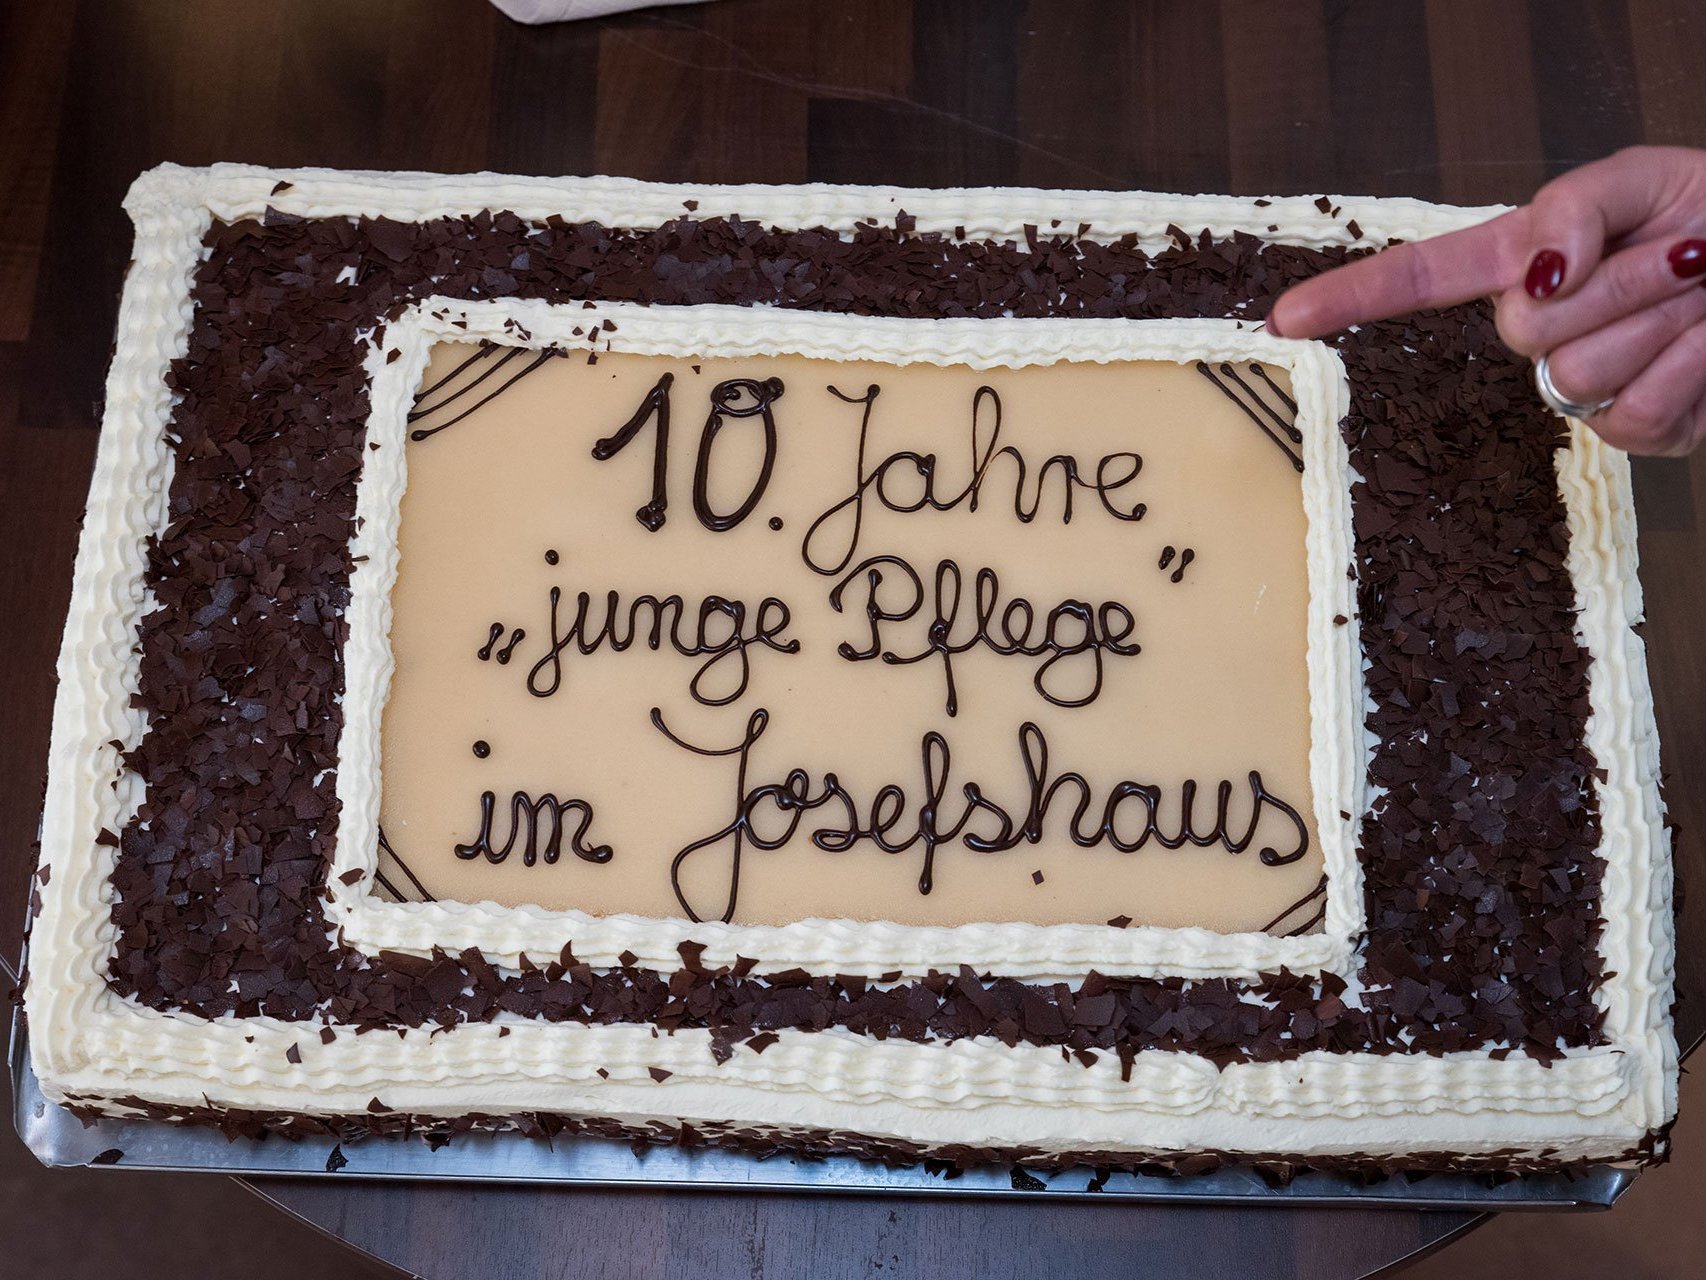 Torte mit Schokoladenverzierung: "10 Jahre "junge Pflege" im Josefshaus